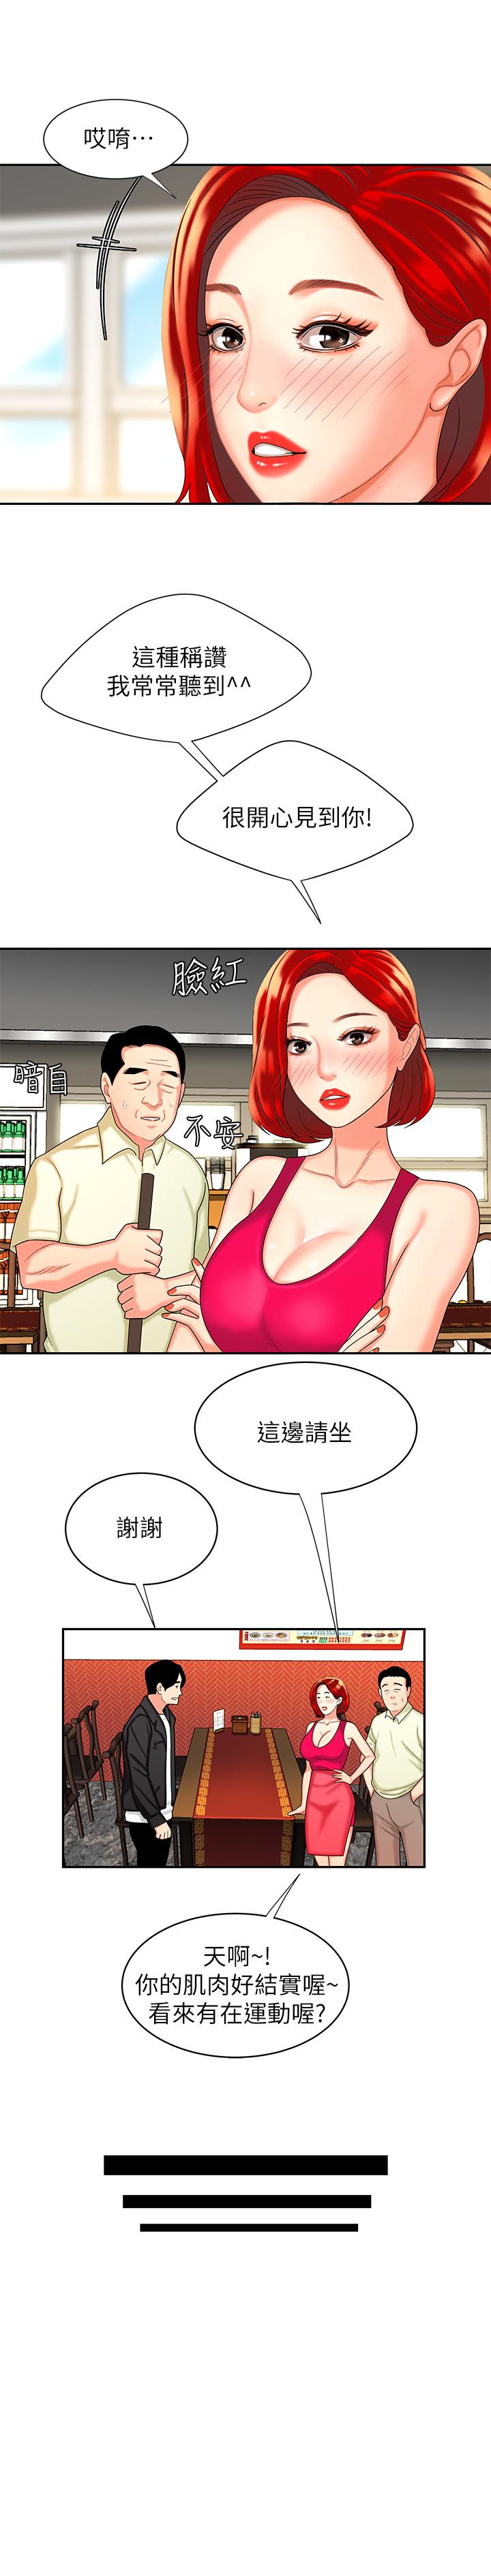 韩国污漫画 幸福外送員 第10话-在炸鸡店重新开始 17